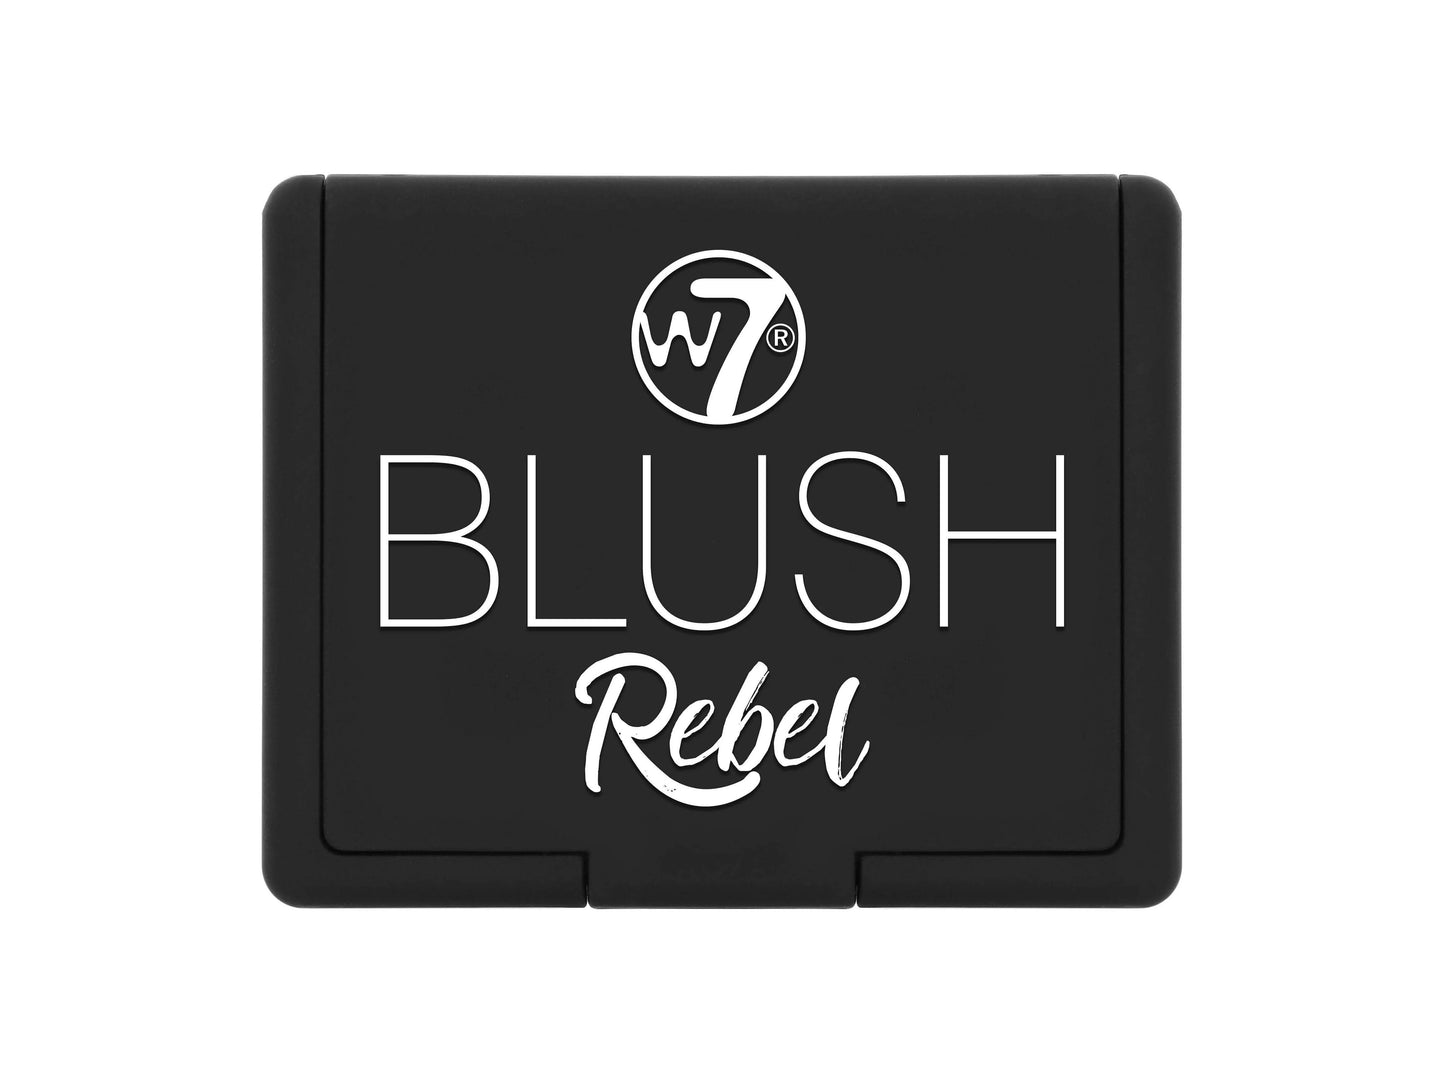 W7 Blush Rebel Strip Tease